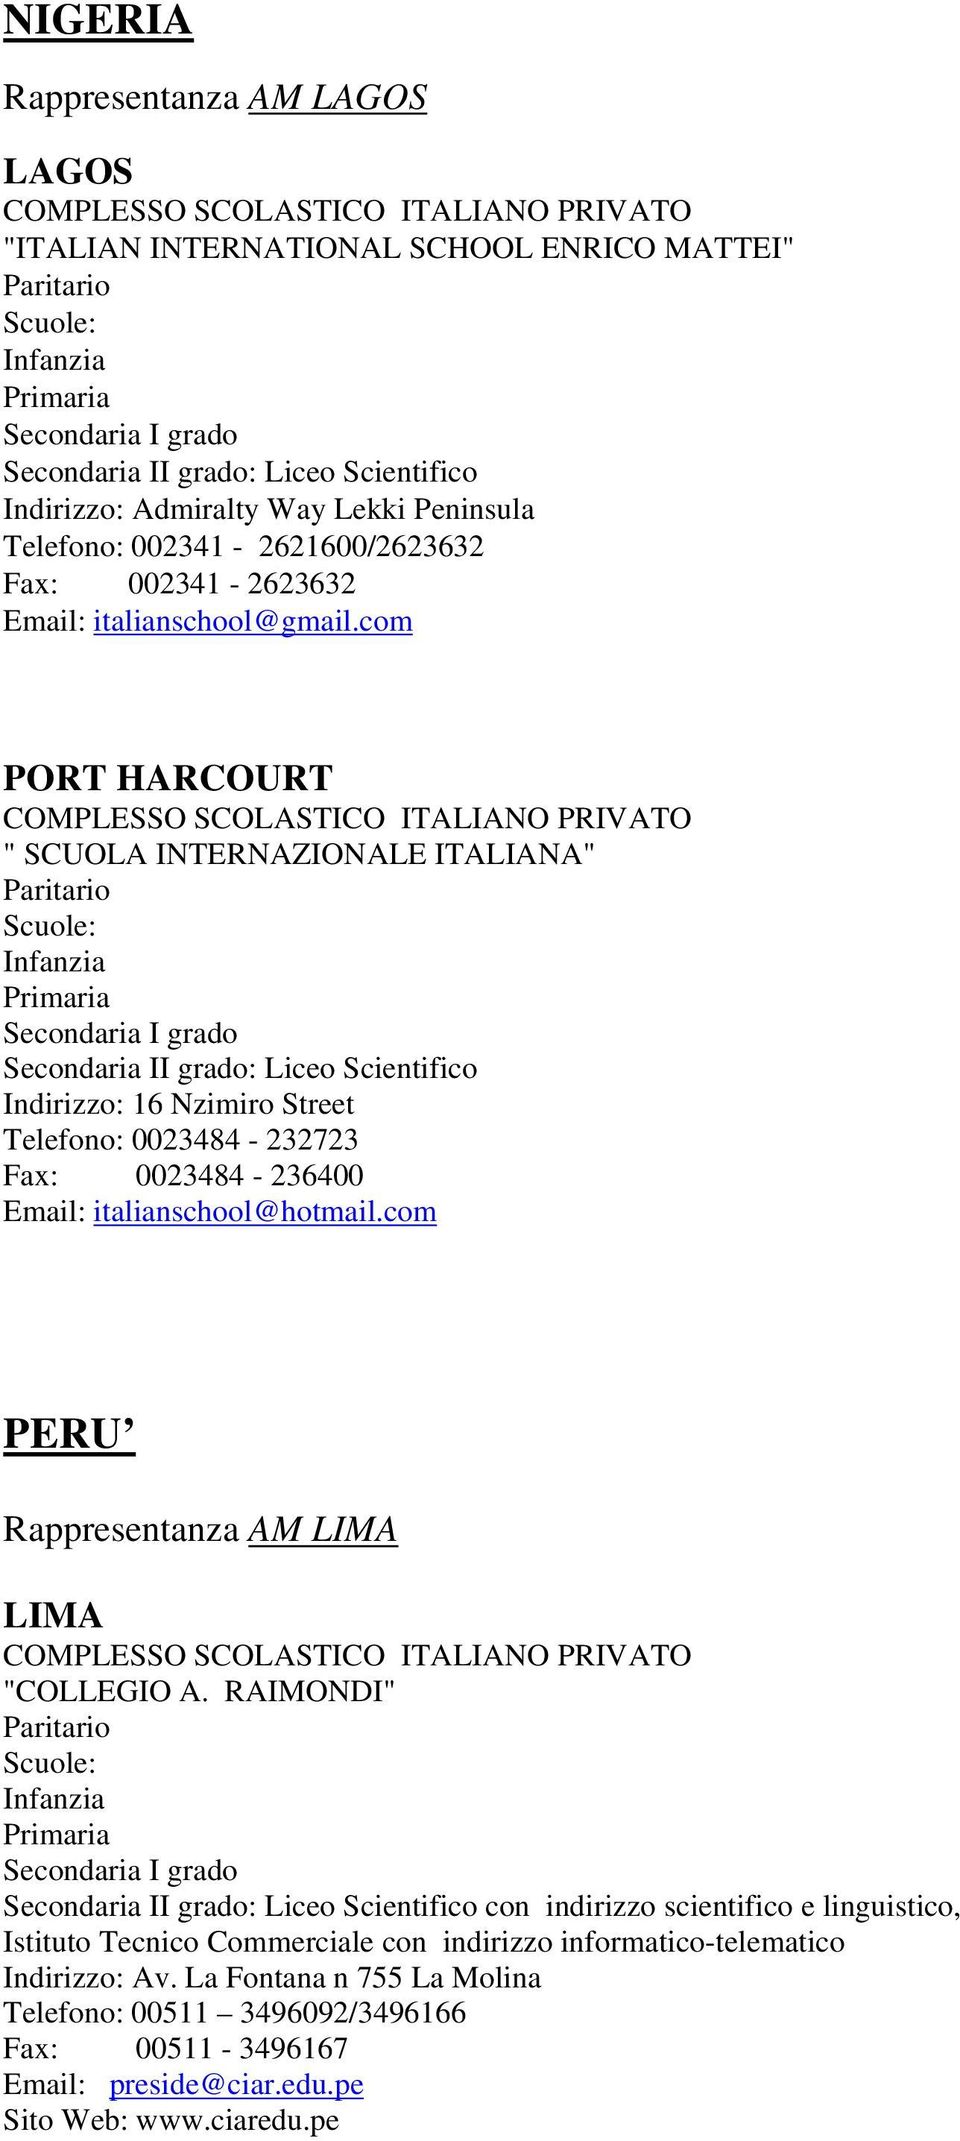 com PORT HARCOURT COMPLESSO SCOLASTICO ITALIANO PRIVATO " SCUOLA INTERNAZIONALE ITALIANA" Indirizzo: 16 Nzimiro Street Telefono: 0023484-232723 Fax: 0023484-236400 Email: italianschool@hotmail.